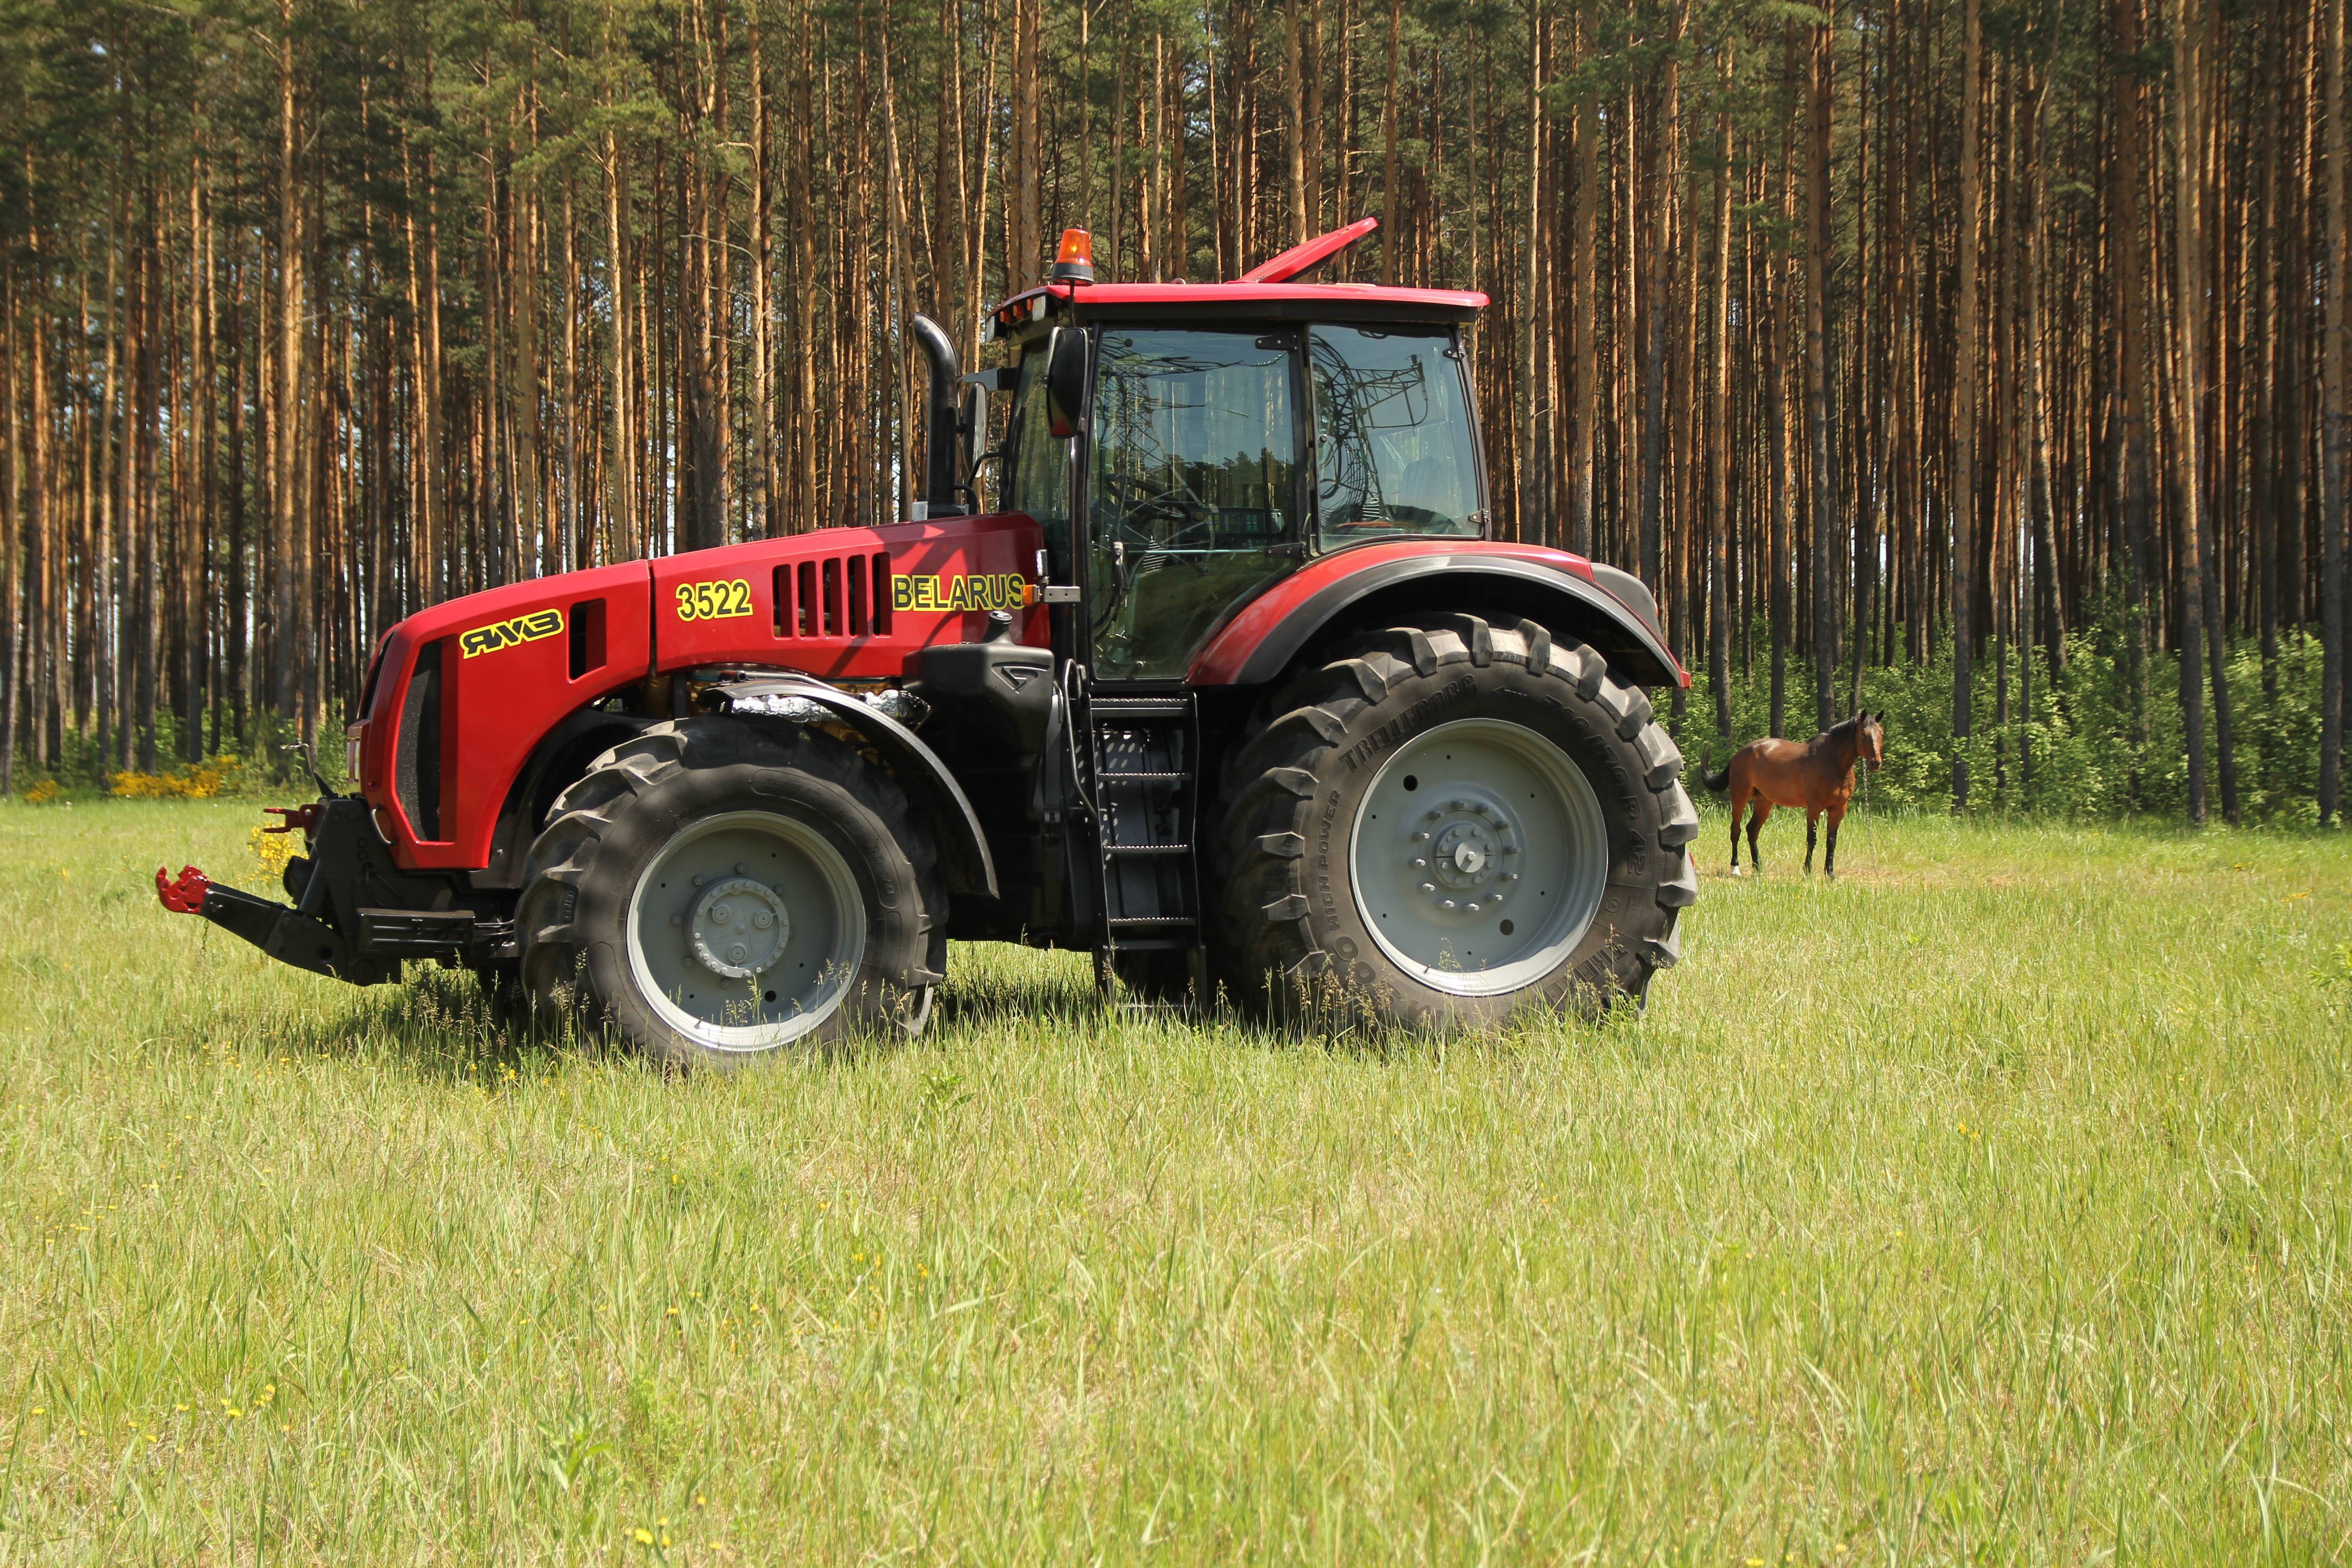 Мтз-3522: технические характеристики трактора belarus, фото